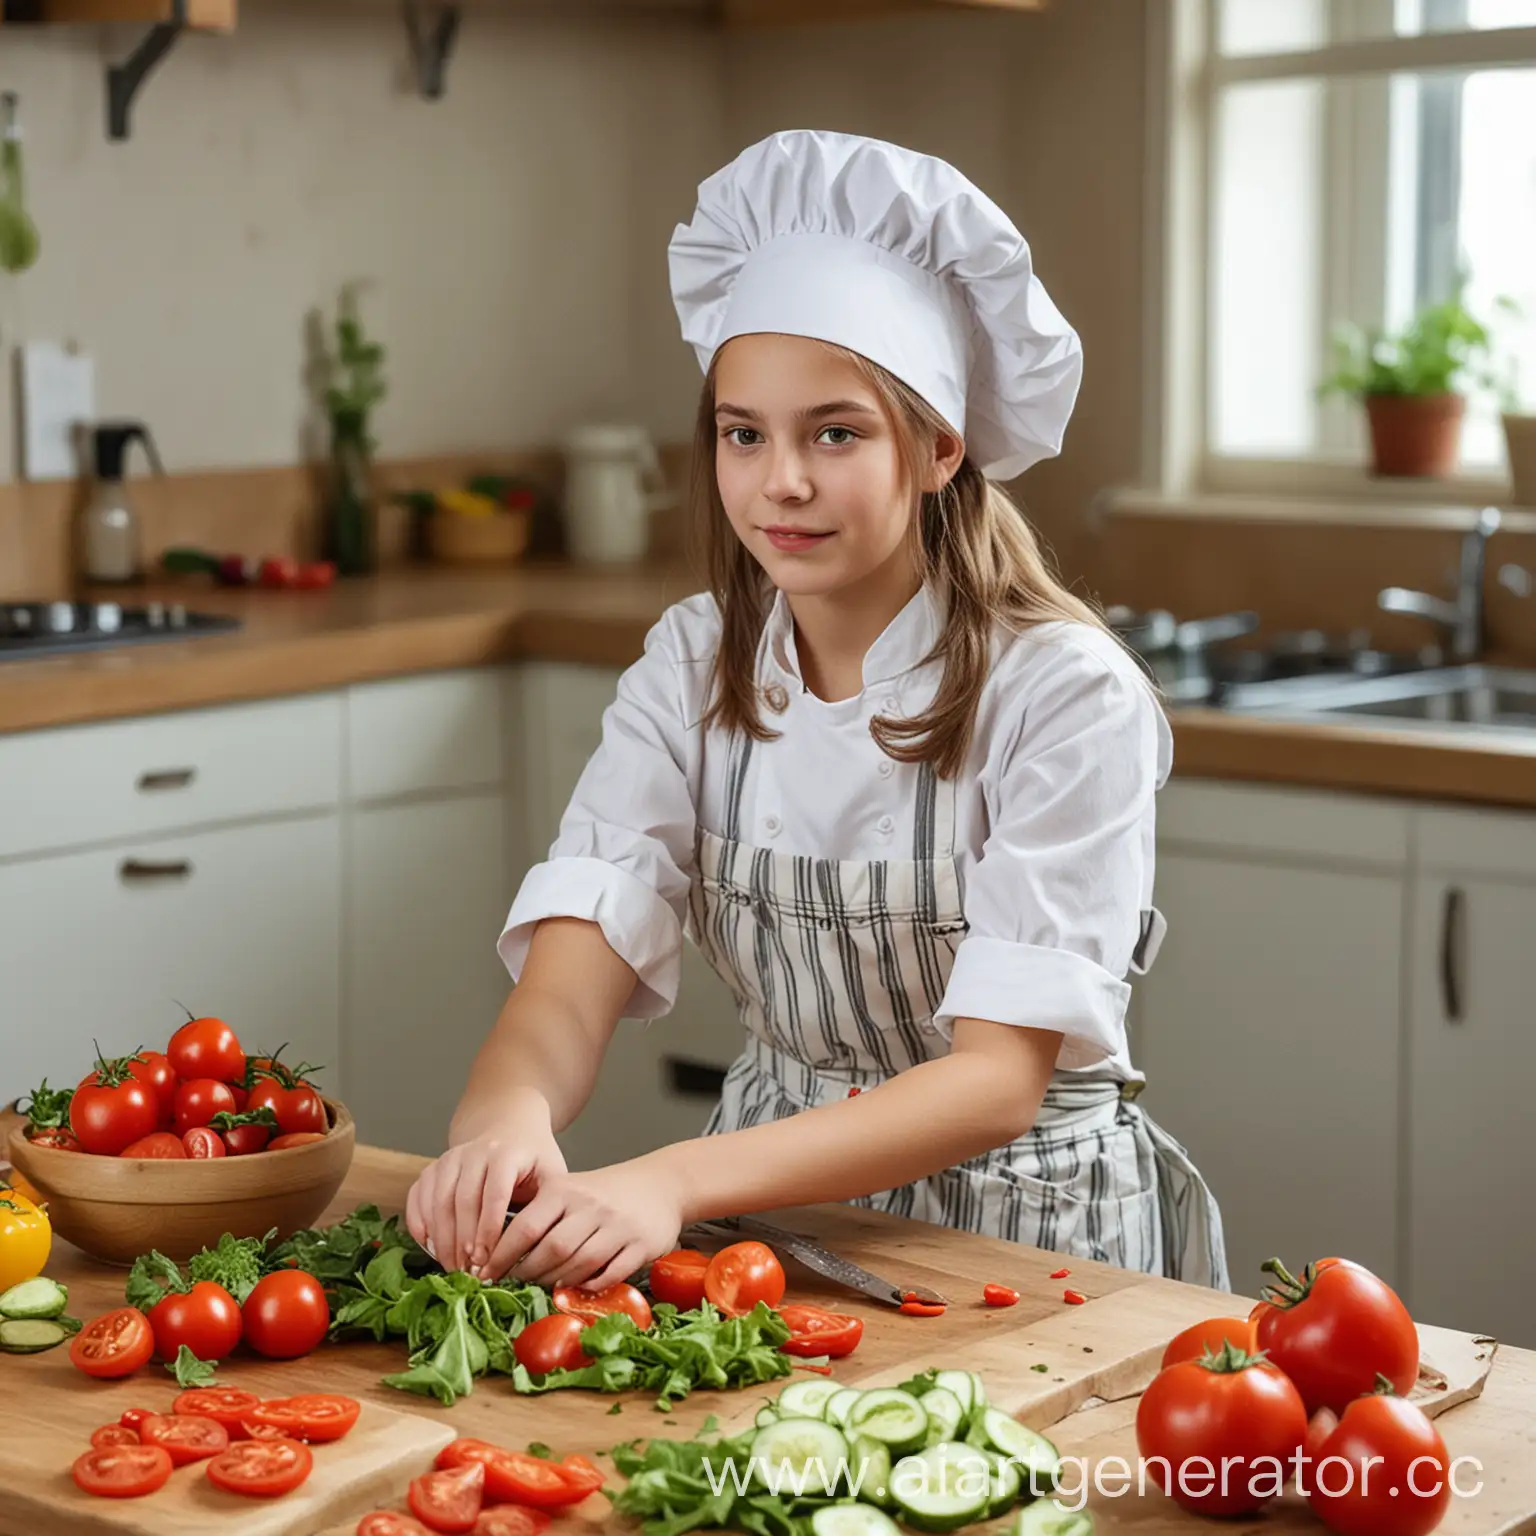 Реальная фотография.  Девочка 15 лет, в фартуке , с поварским колпаком на голове, сидит за кухонным столом и режет салат. На столе лежат помидоры, огурцы, перец. 